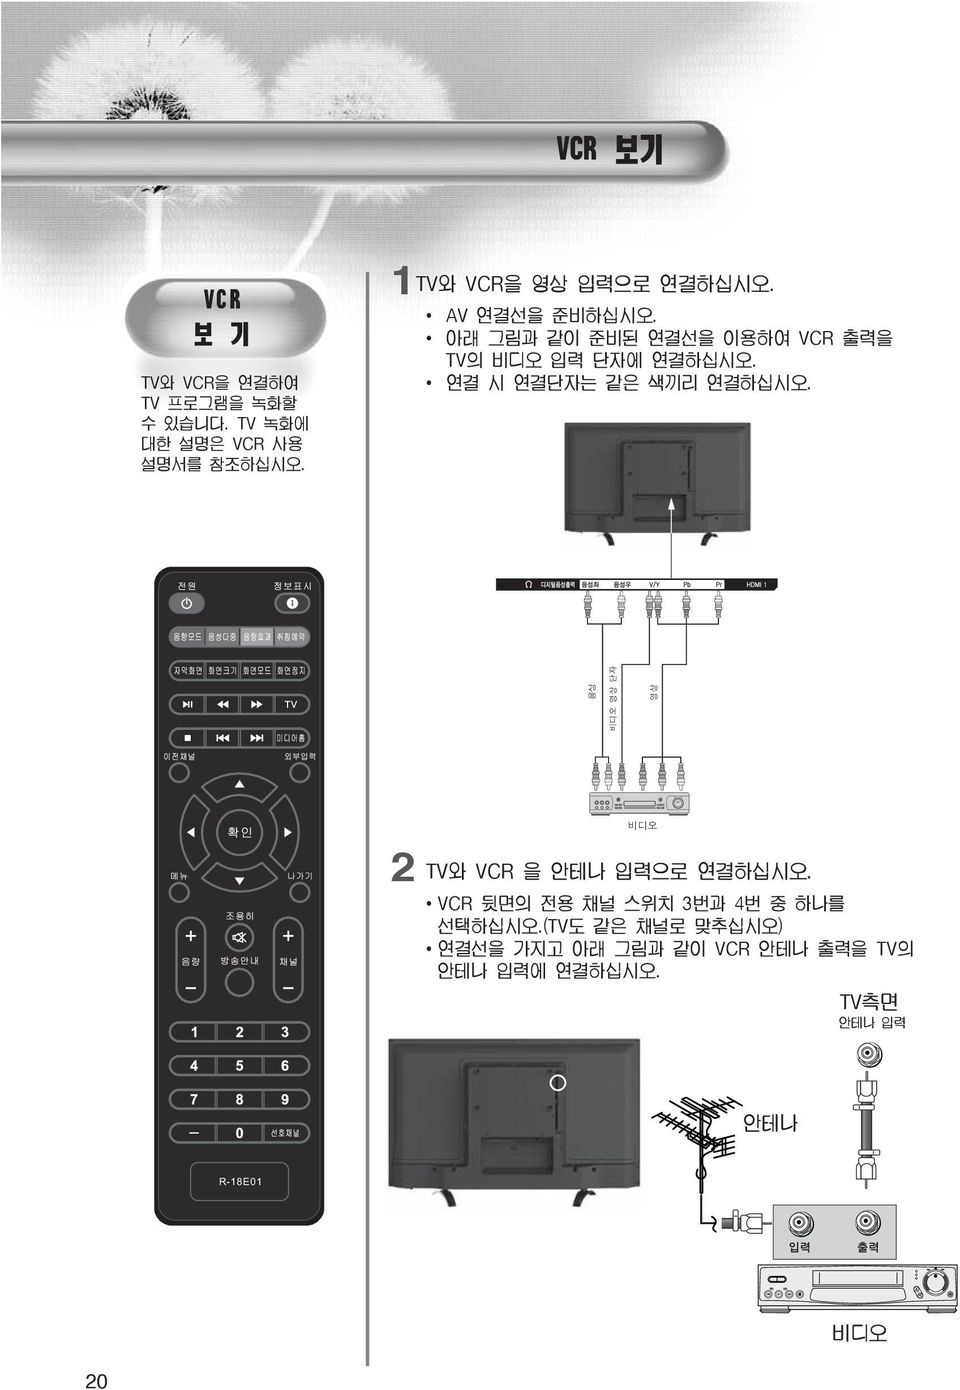 아래 그림과 같이 준비된 연결선을 이용하여 VCR 출력을 TV의 비디오 입력 단자에 연결하십시오. 연결 시 연결단자는 같은 색끼리 연결하십시오.